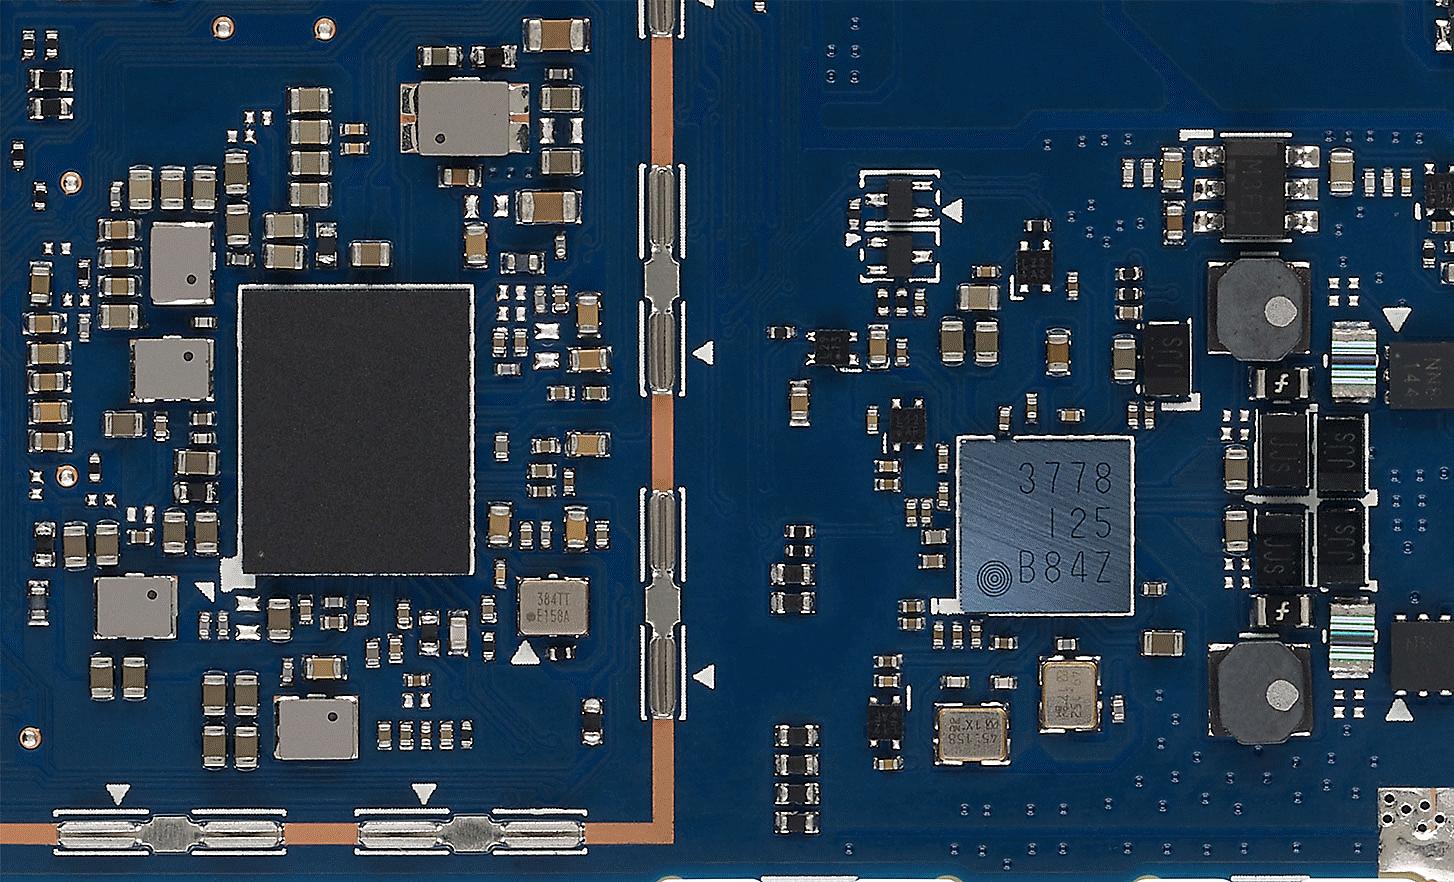 NW-A306 섀시 내부의 고품질 부품을 보여주는 이미지.